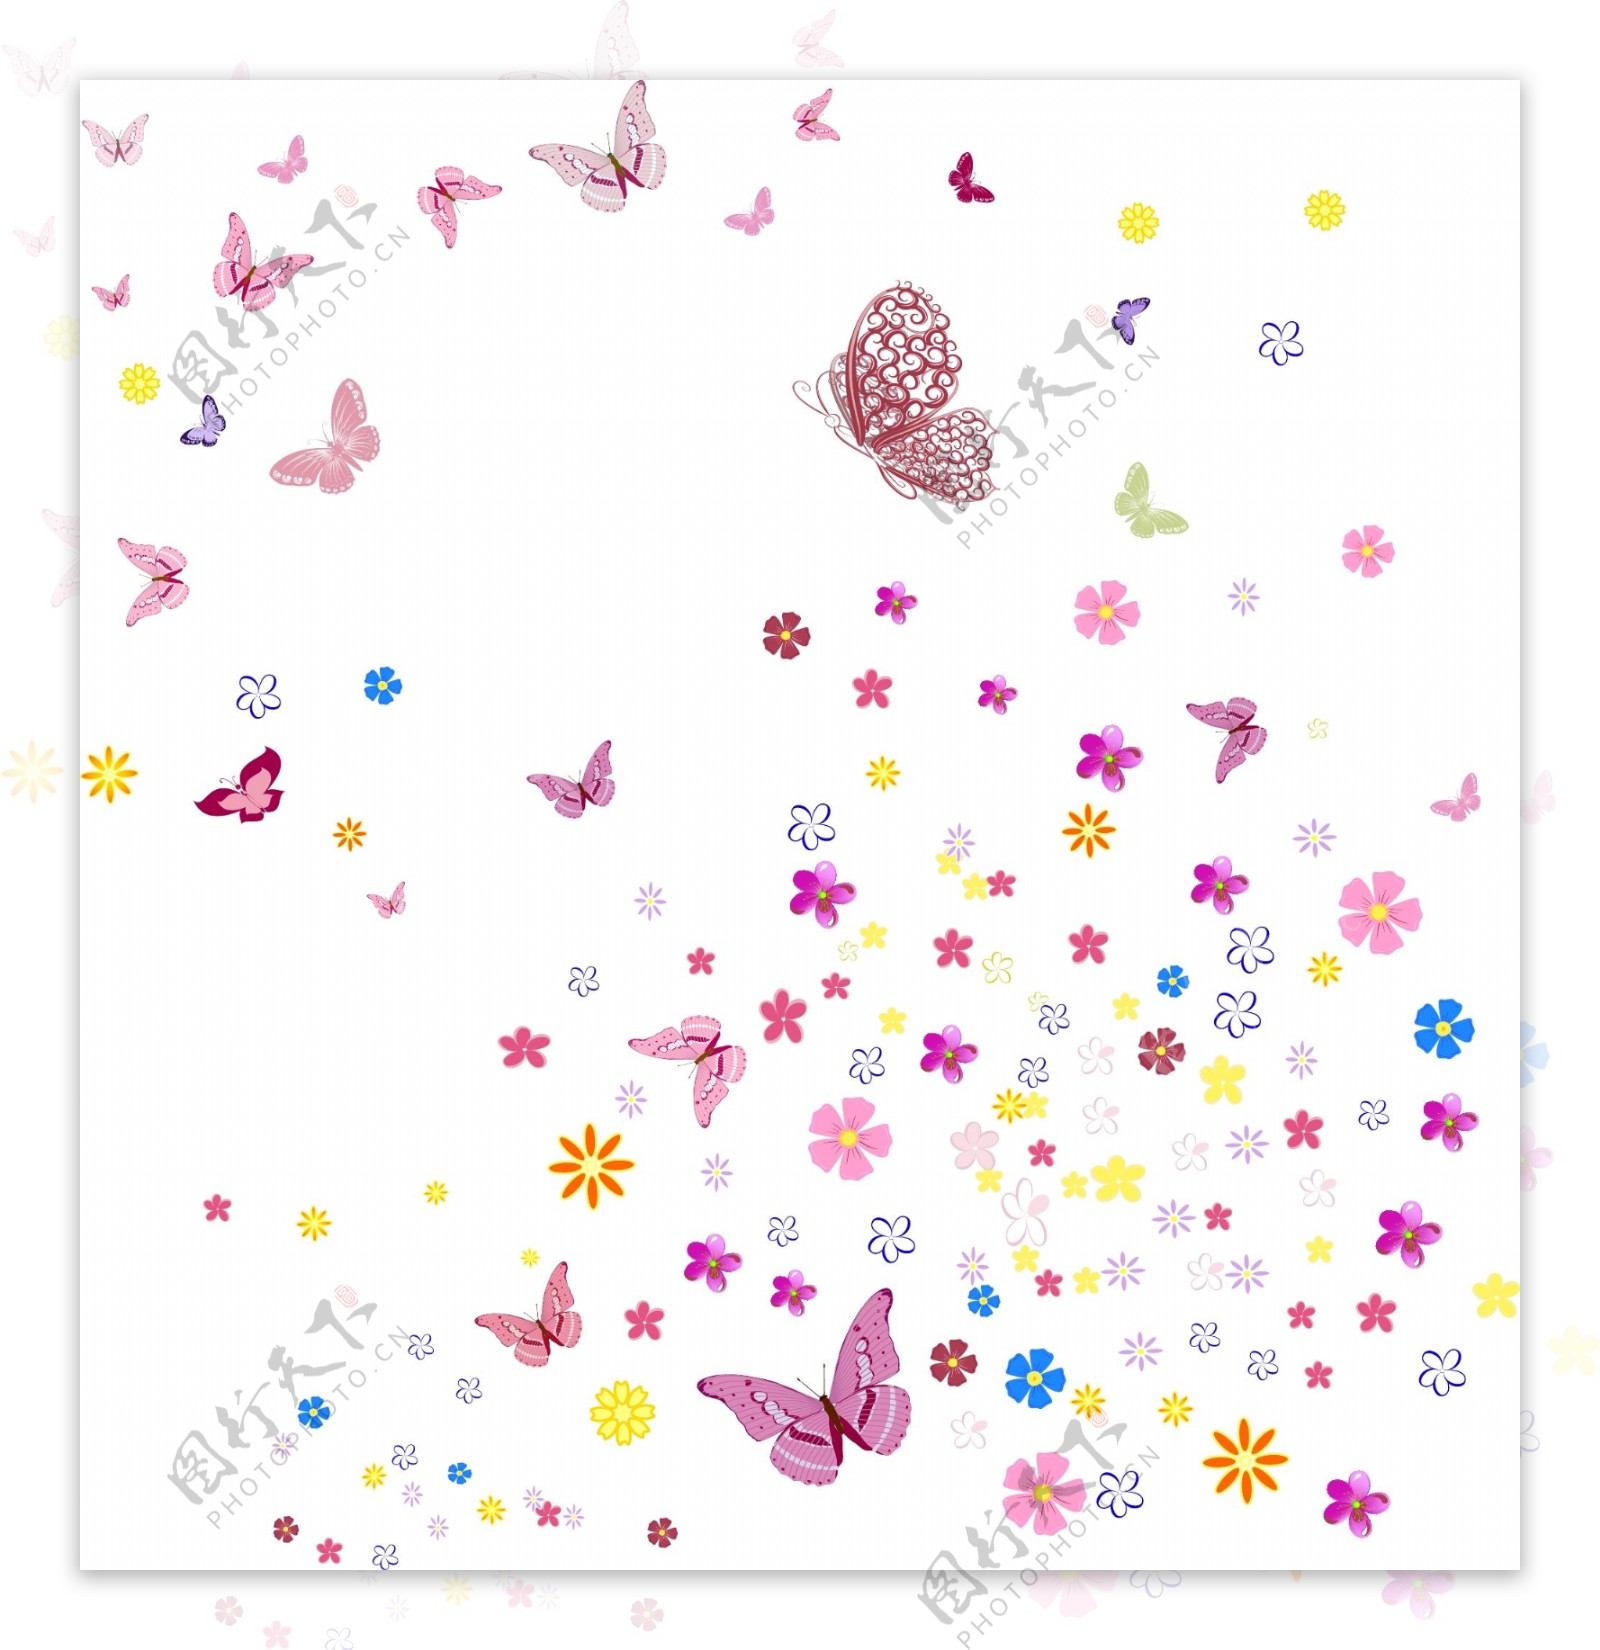 花和蝴蝶矢量图片